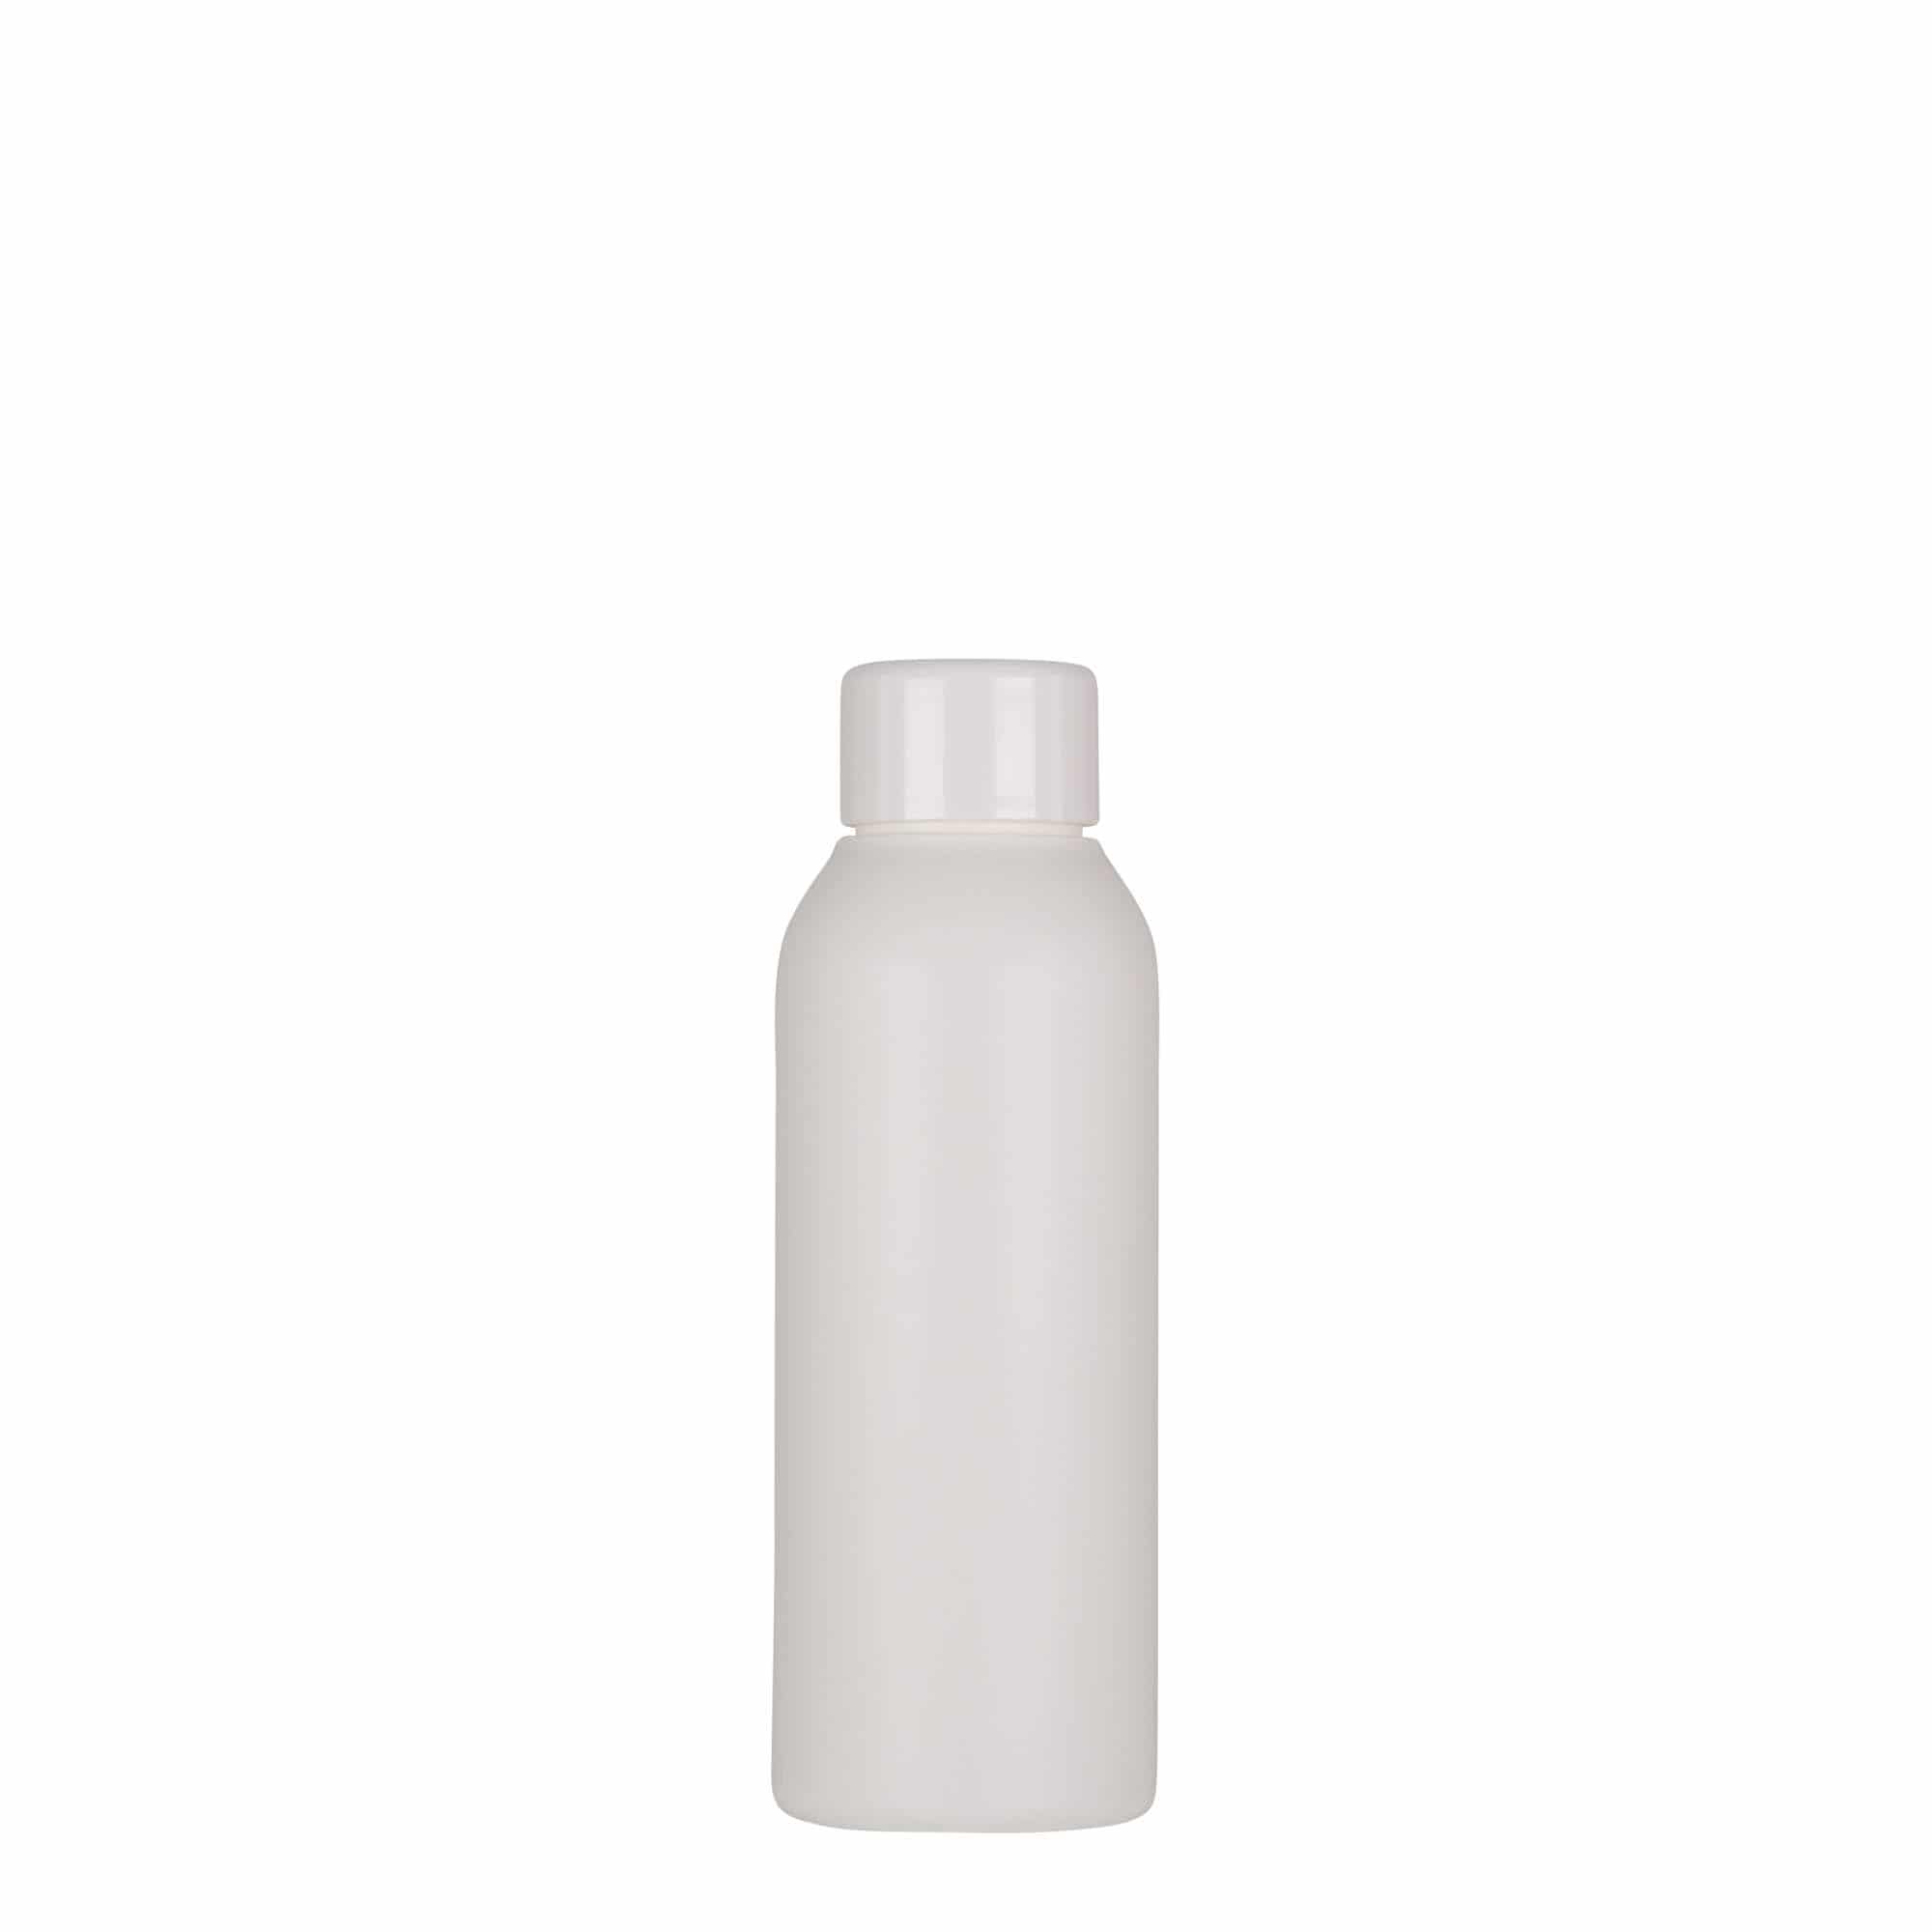 100 ml-es műanyag palack 'Tuffy', HDPE, fehér, szájnyílás: GPI 24/410